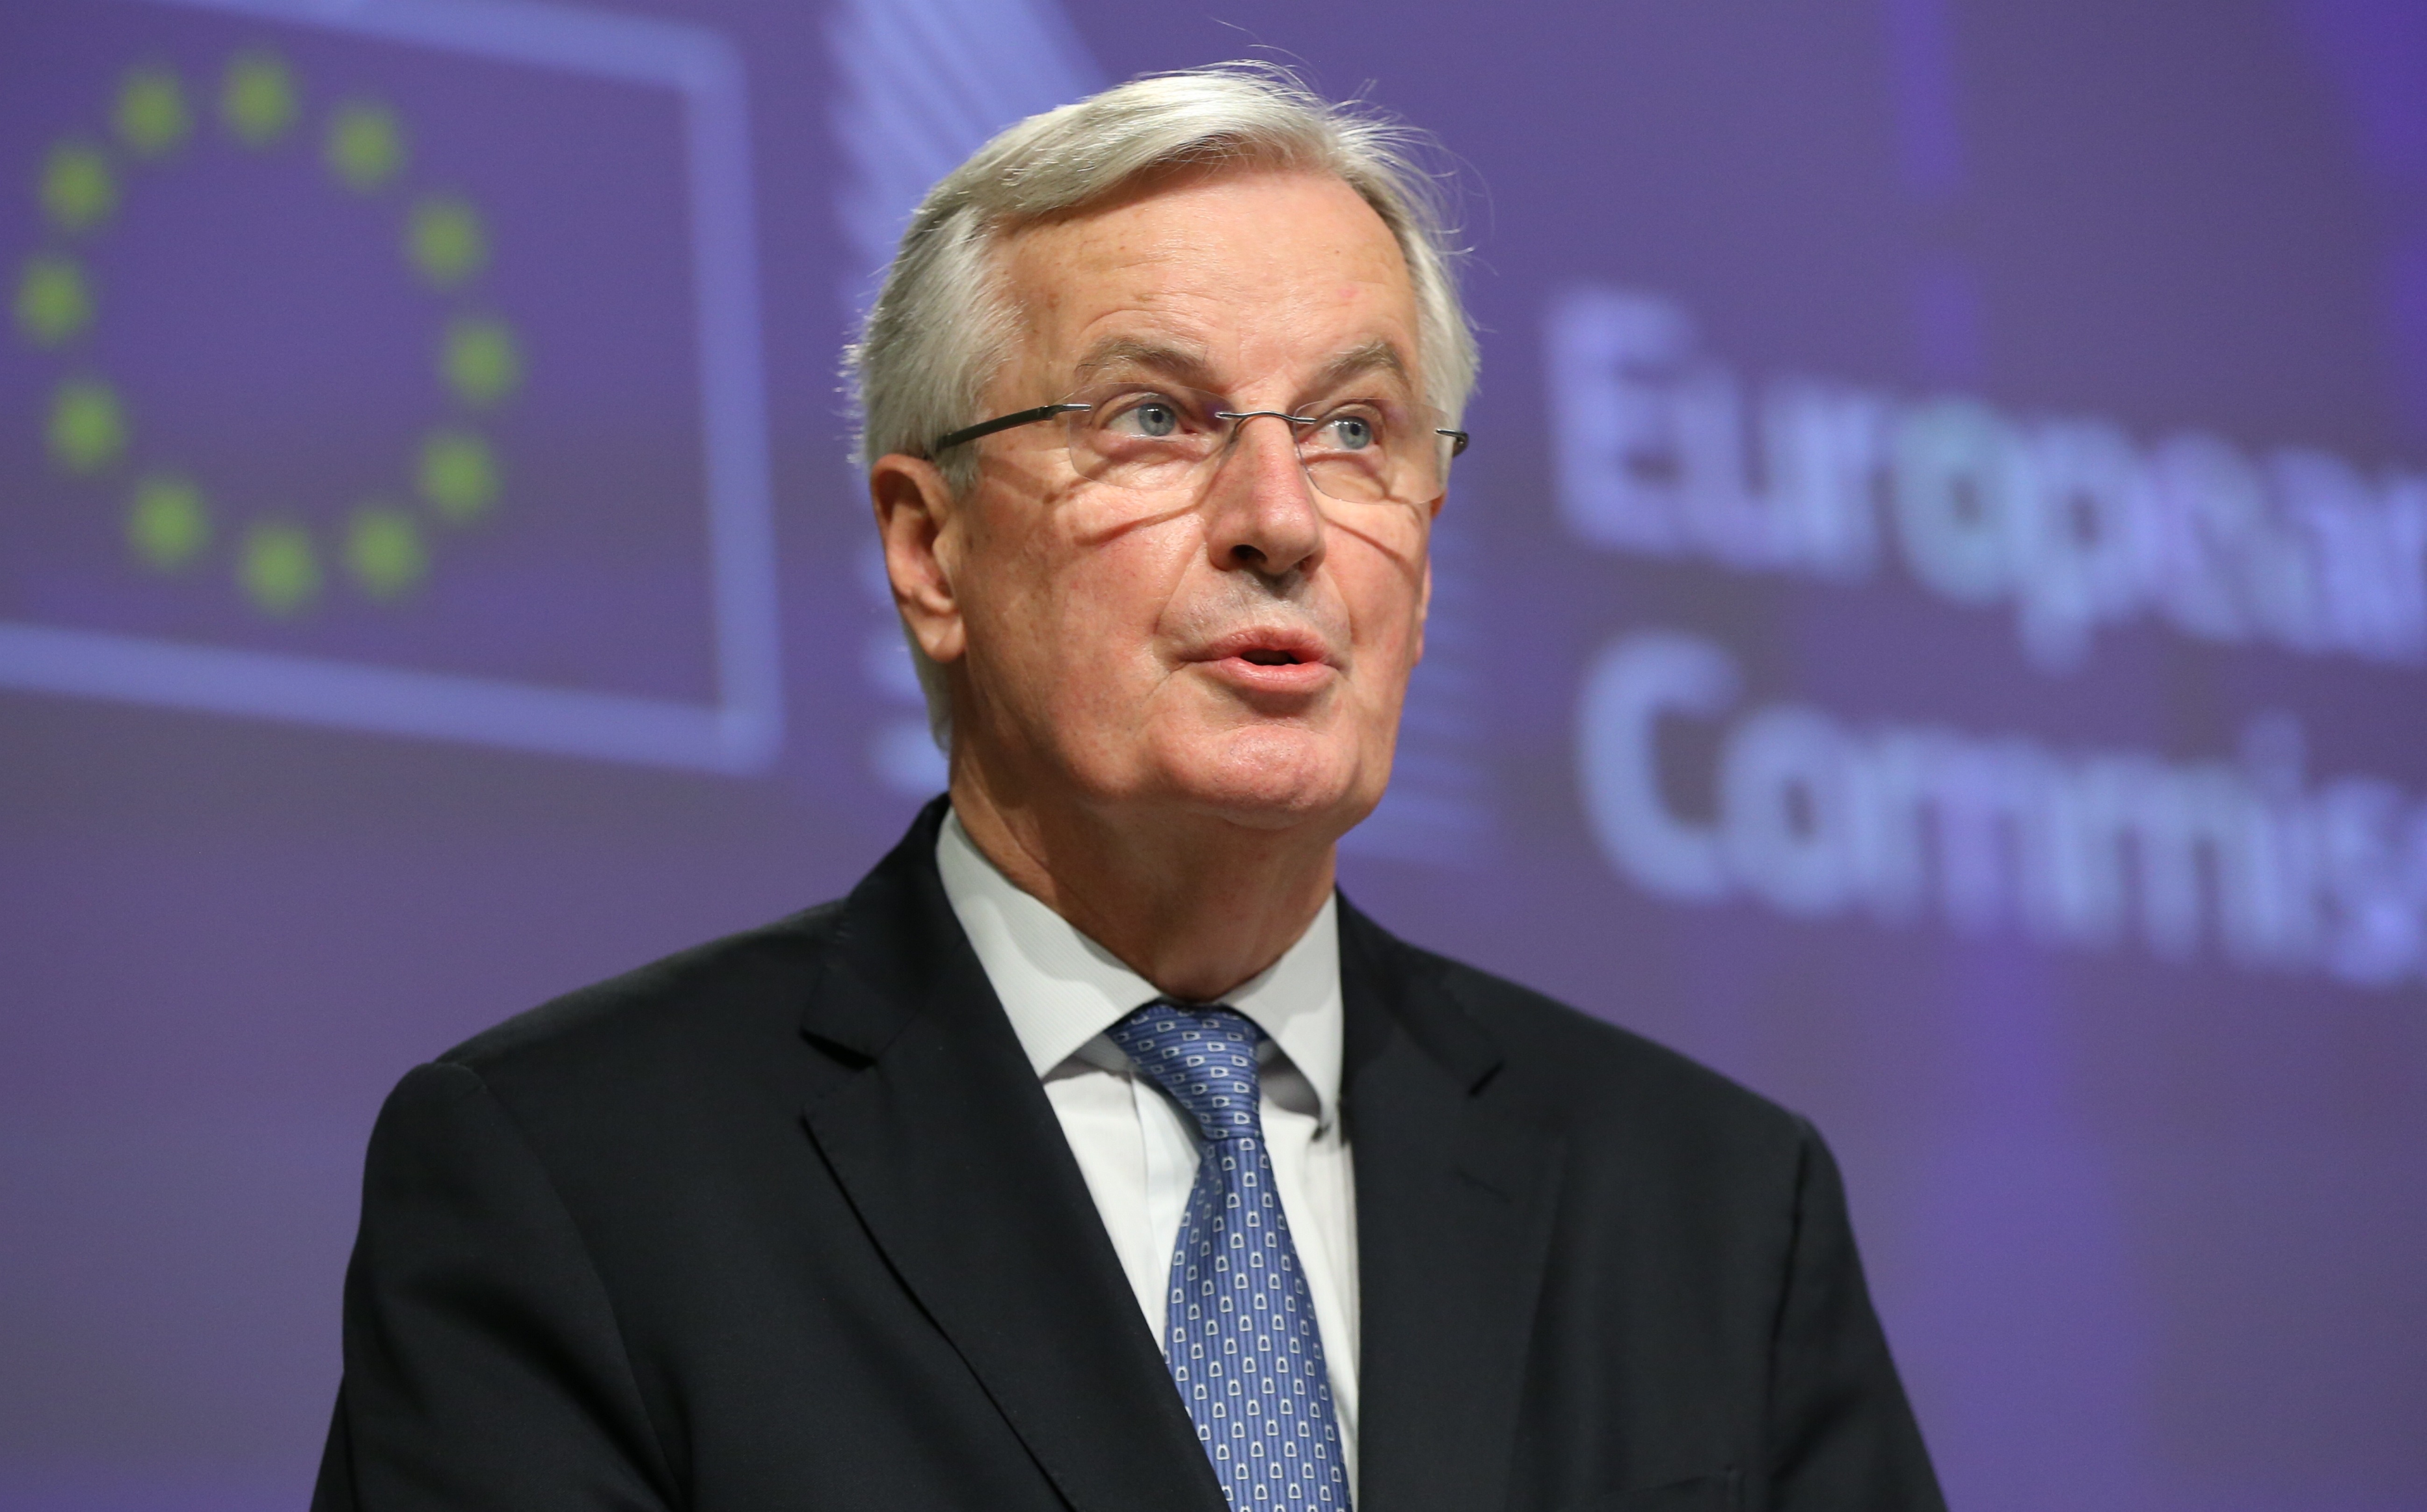 Der frühere EU-Unterhändler Michel Barnier hat die von den Labour-Führern geplante Neufassung des Brexit-Deals abgelehnt